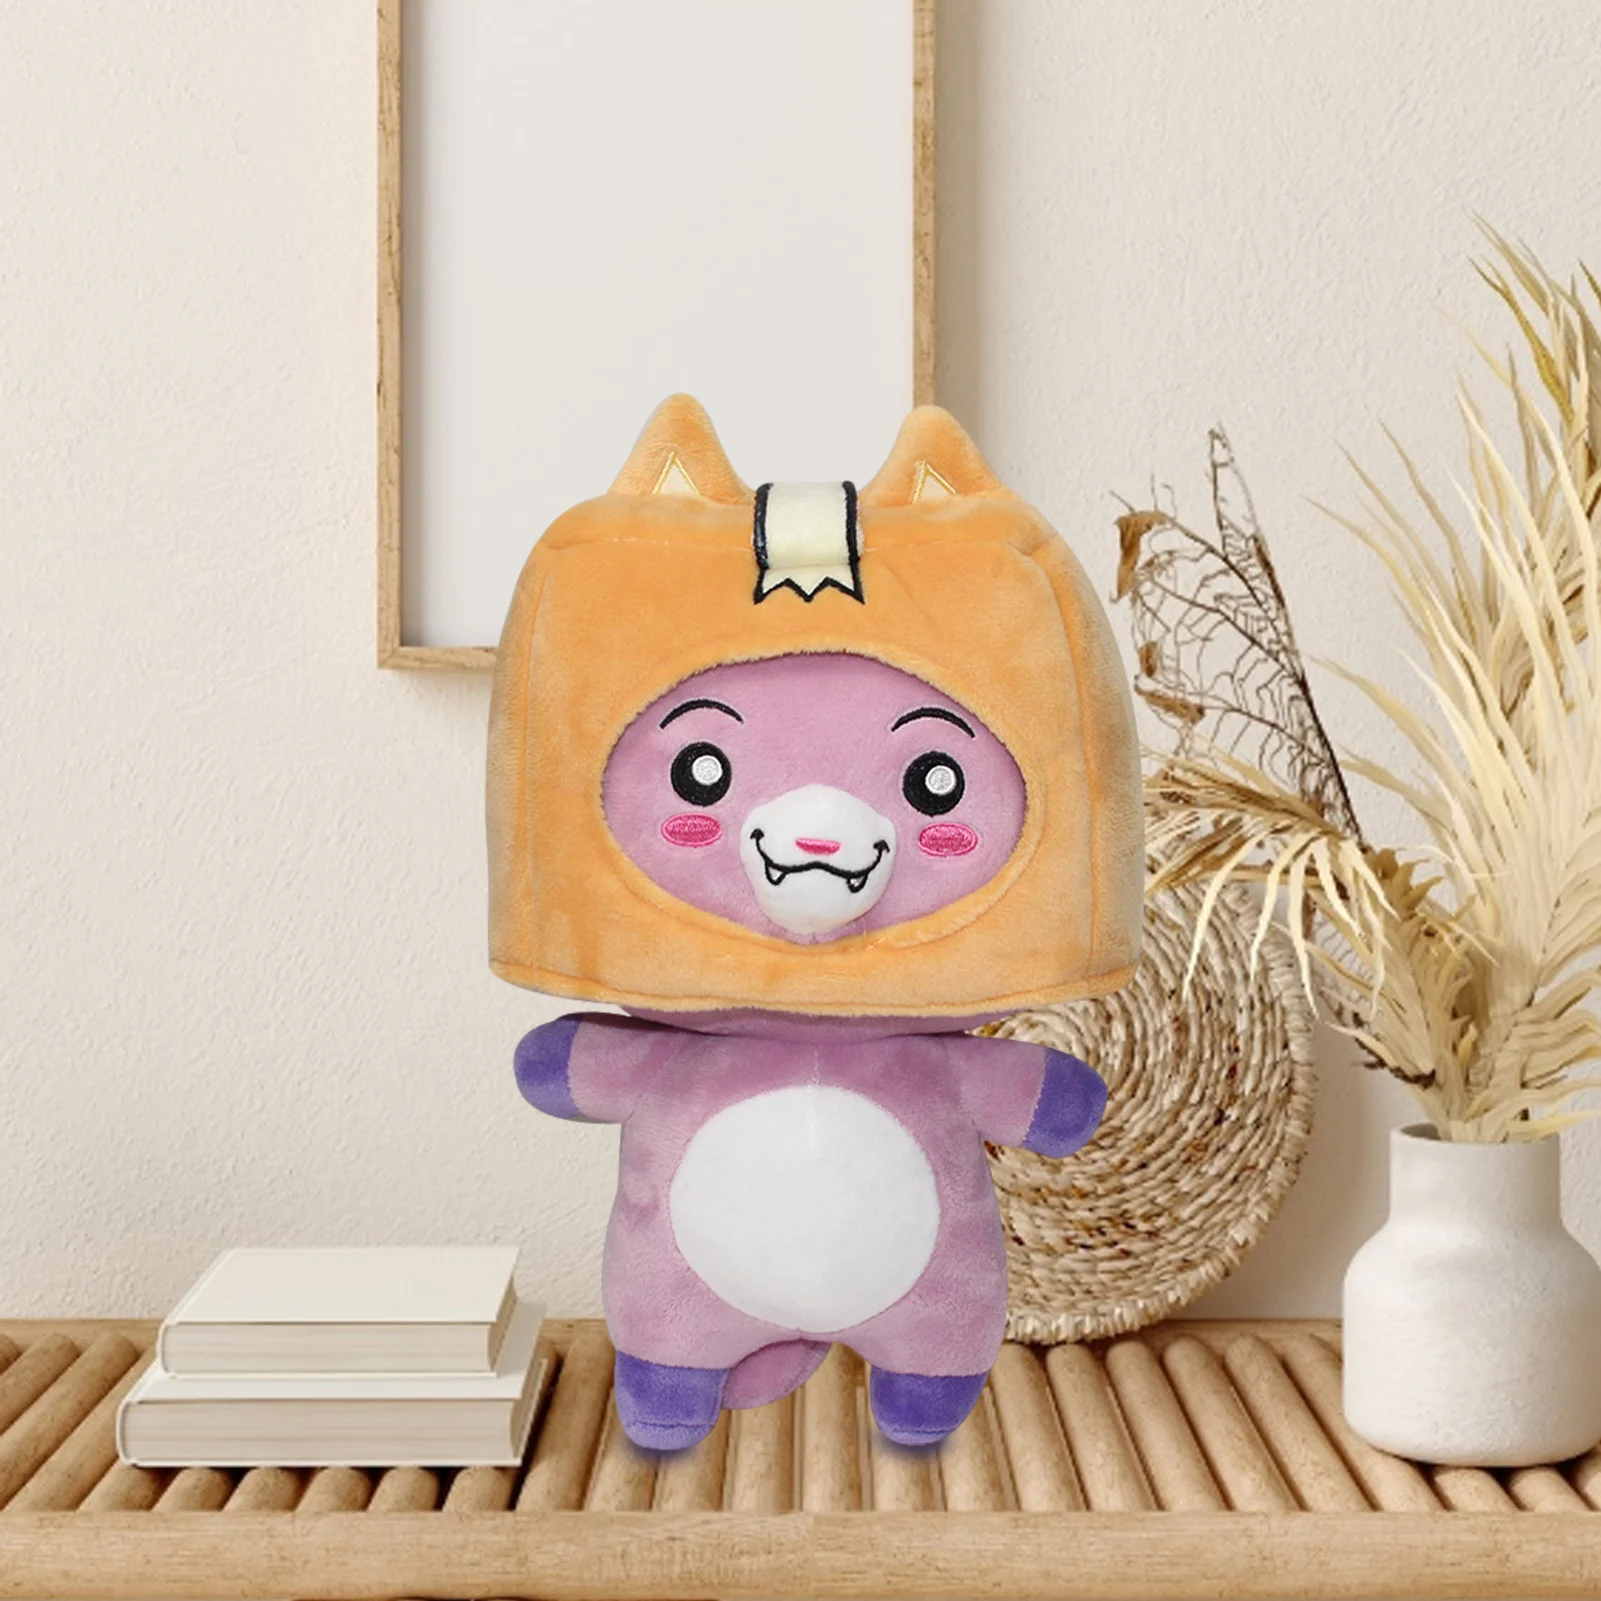 Аниме Покемон мягкая подушка-животное игрушка Кот плюшевая игрушка кукла подарки для детей подарок на день рождения